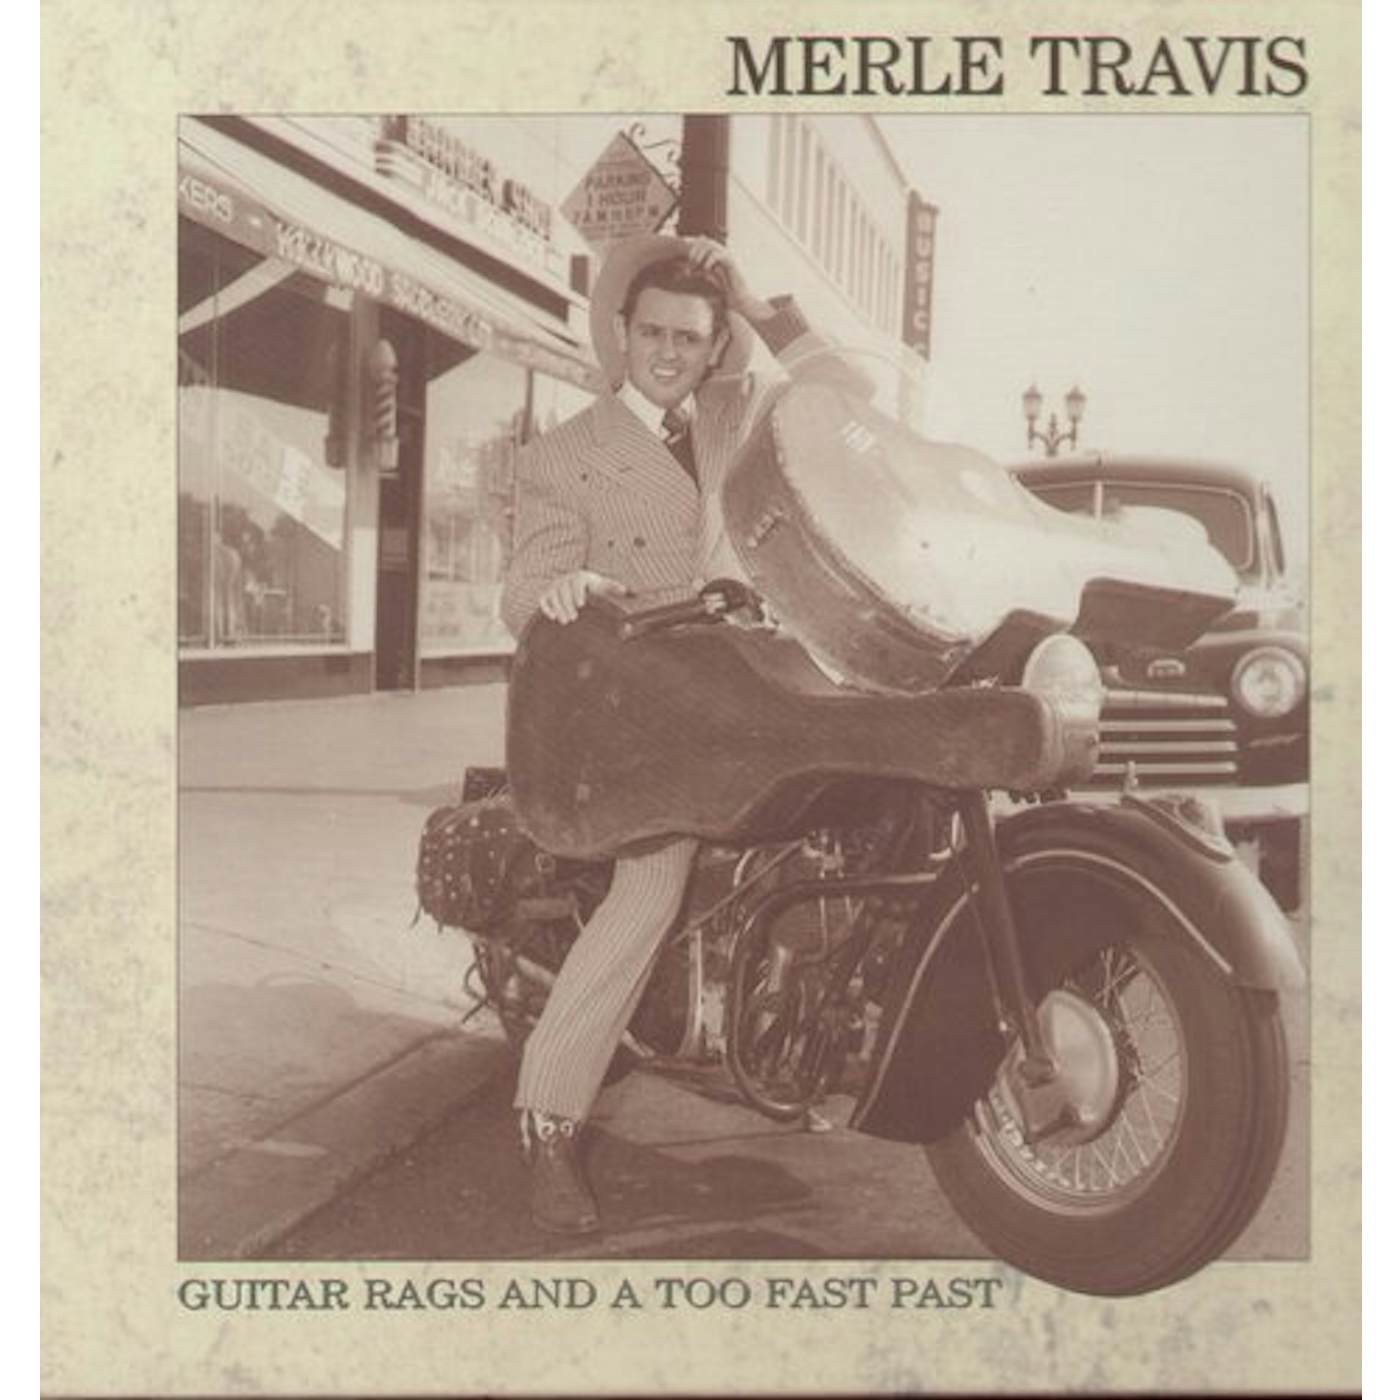 Merle Travis GUITAR RAGS & A TOO FAR PAST CD